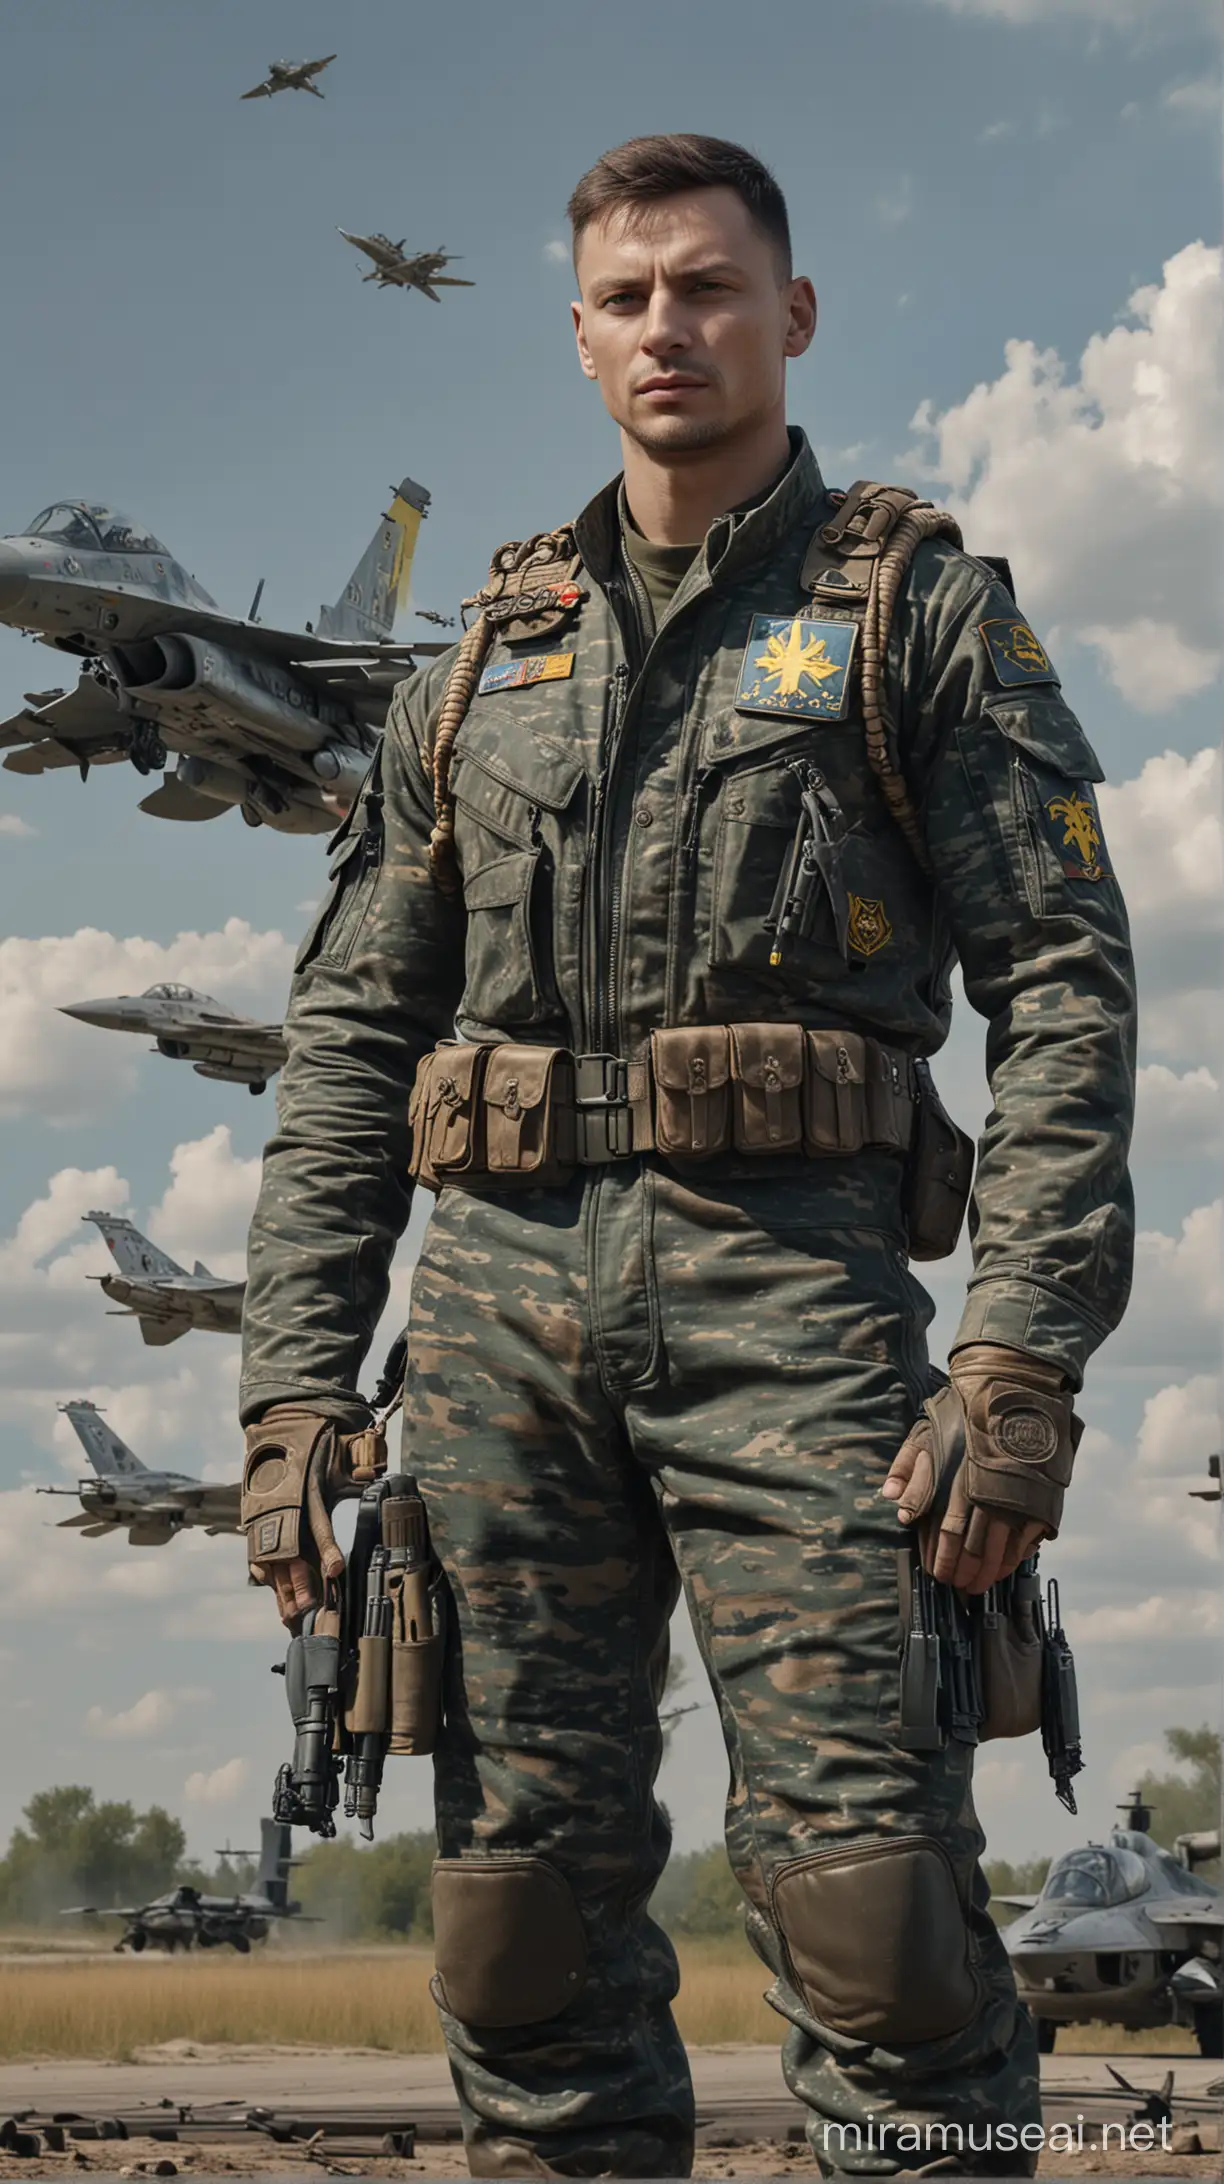  Українский Танкіст і  пілот с українською символікою в комуфляжній формі, танк Т-80 і літак F-16 .гіперреалістично,8к. В стилі кінематографії 

